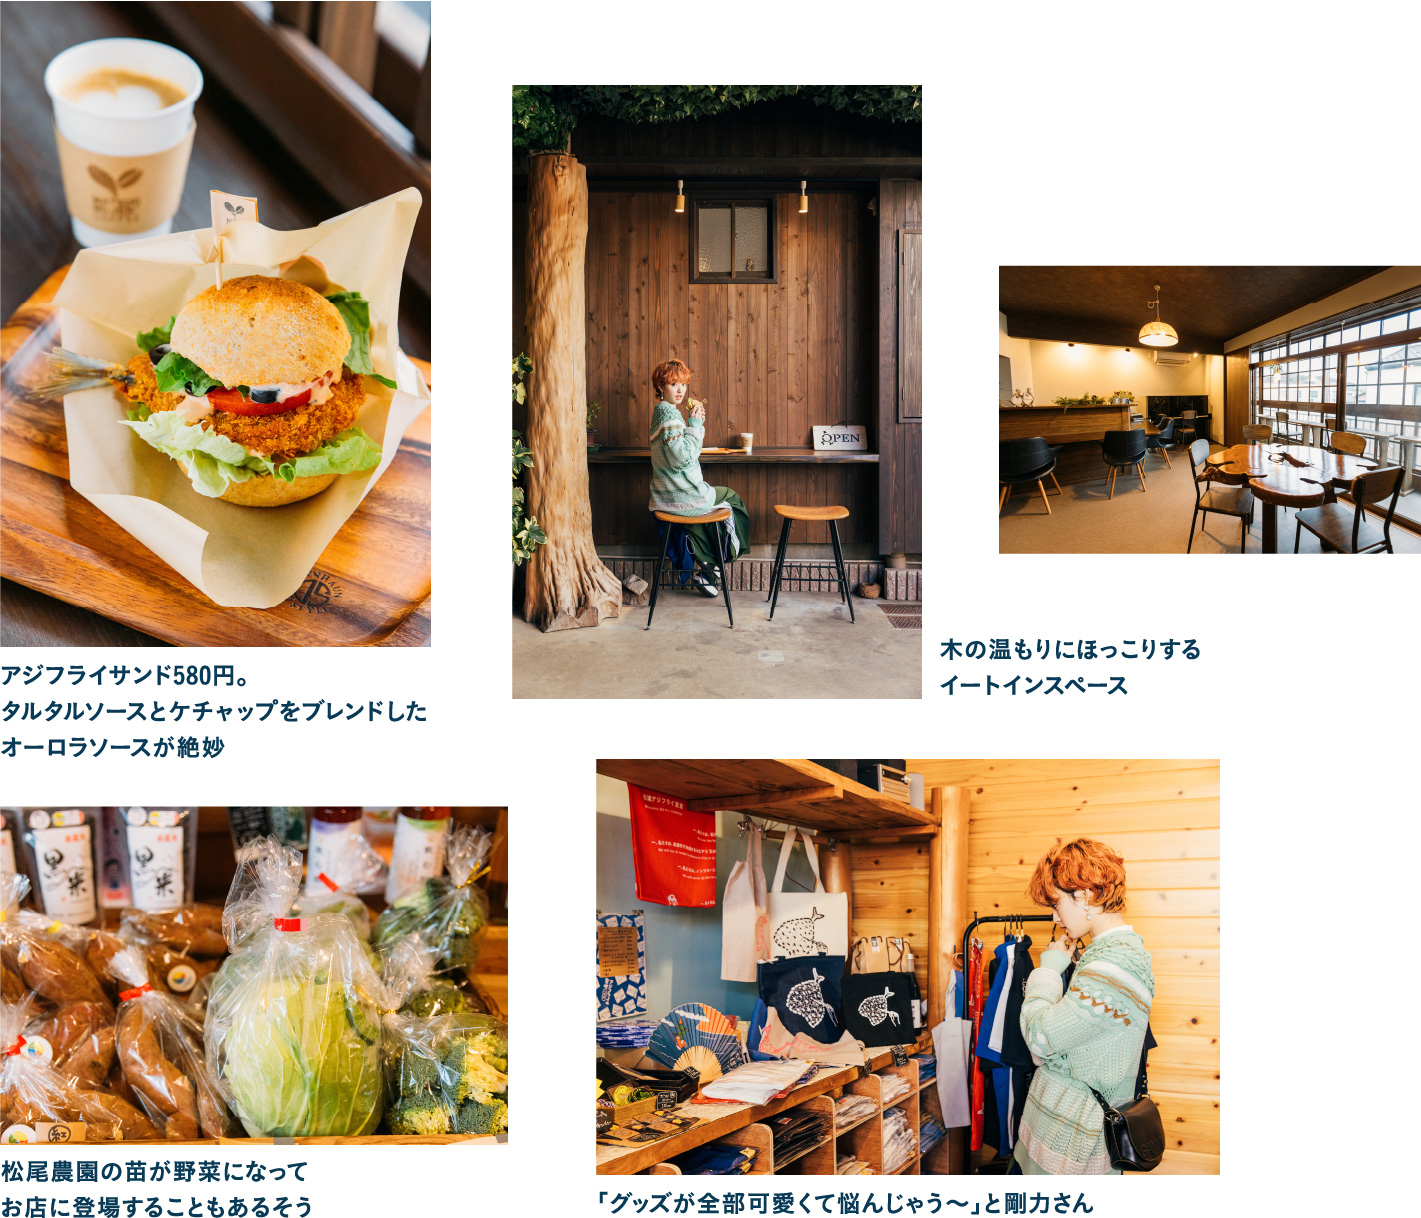 松浦愛に溢れた松尾農園 Matsuo Nouen+coffeeでサクサクのアジフライサンドをいただきます